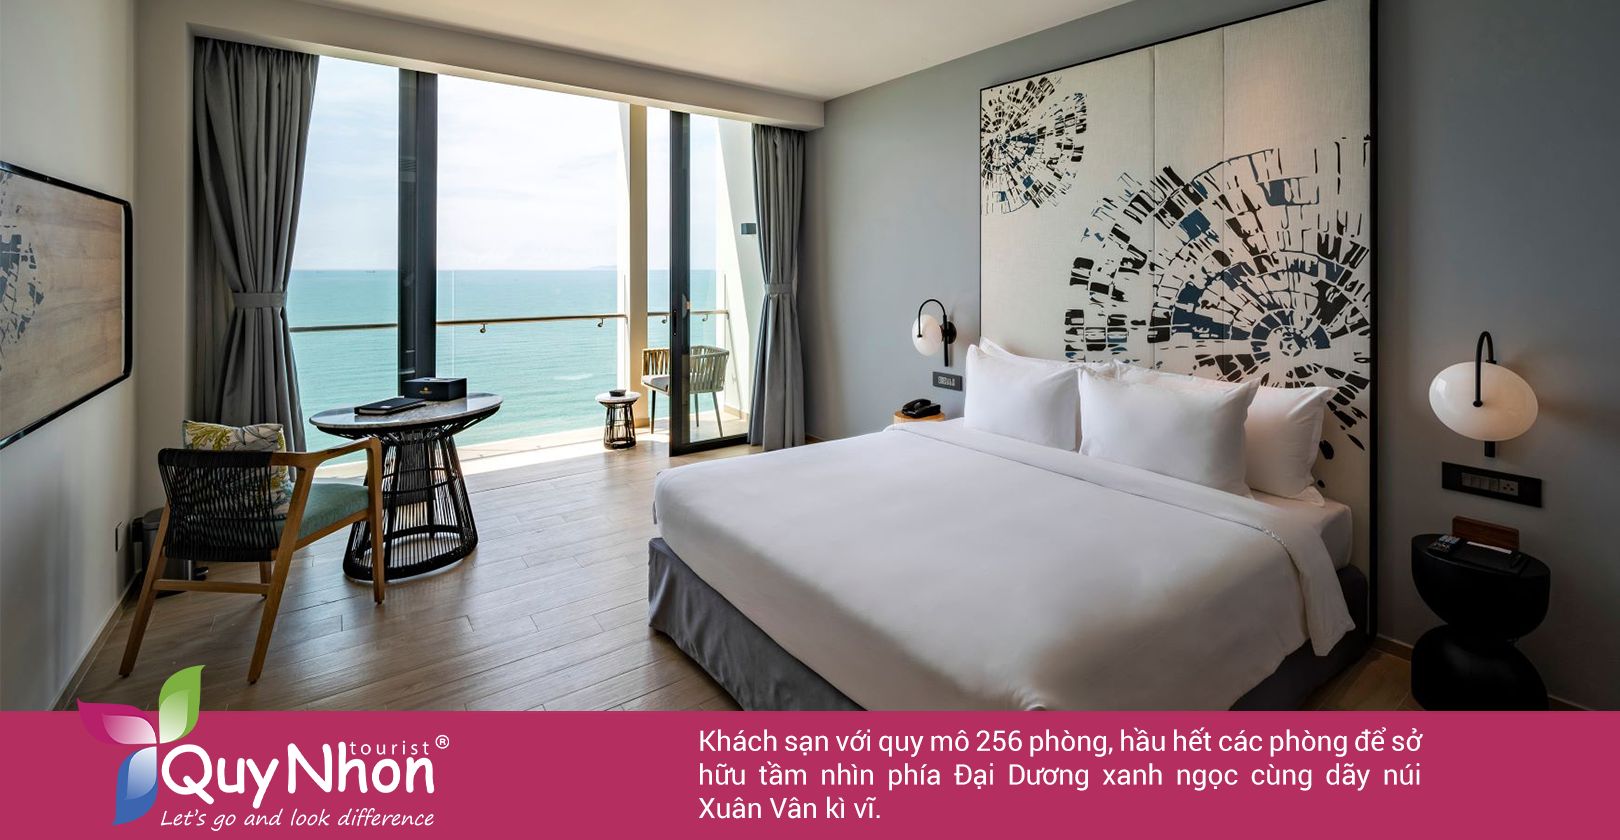 Khách sạn với quy mô 256 phòng, hầu hết các phòng để sở hữu tầm nhìn đẹp.